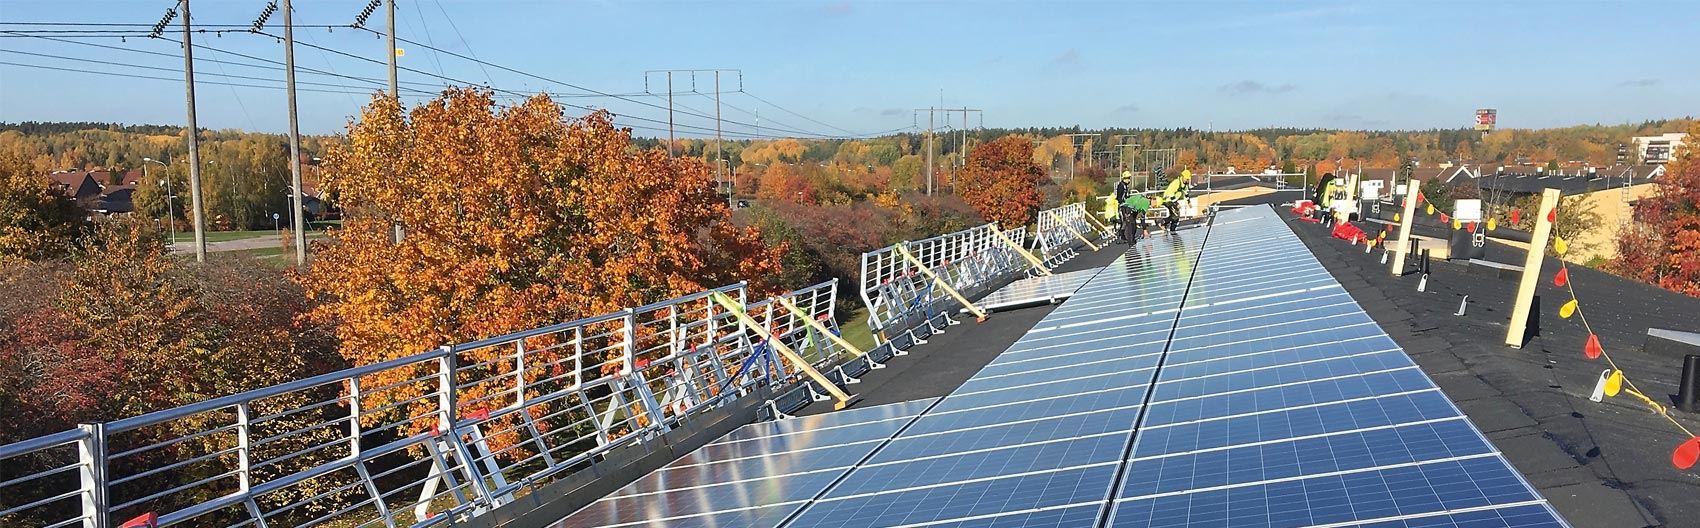 Installation av solceller på tak